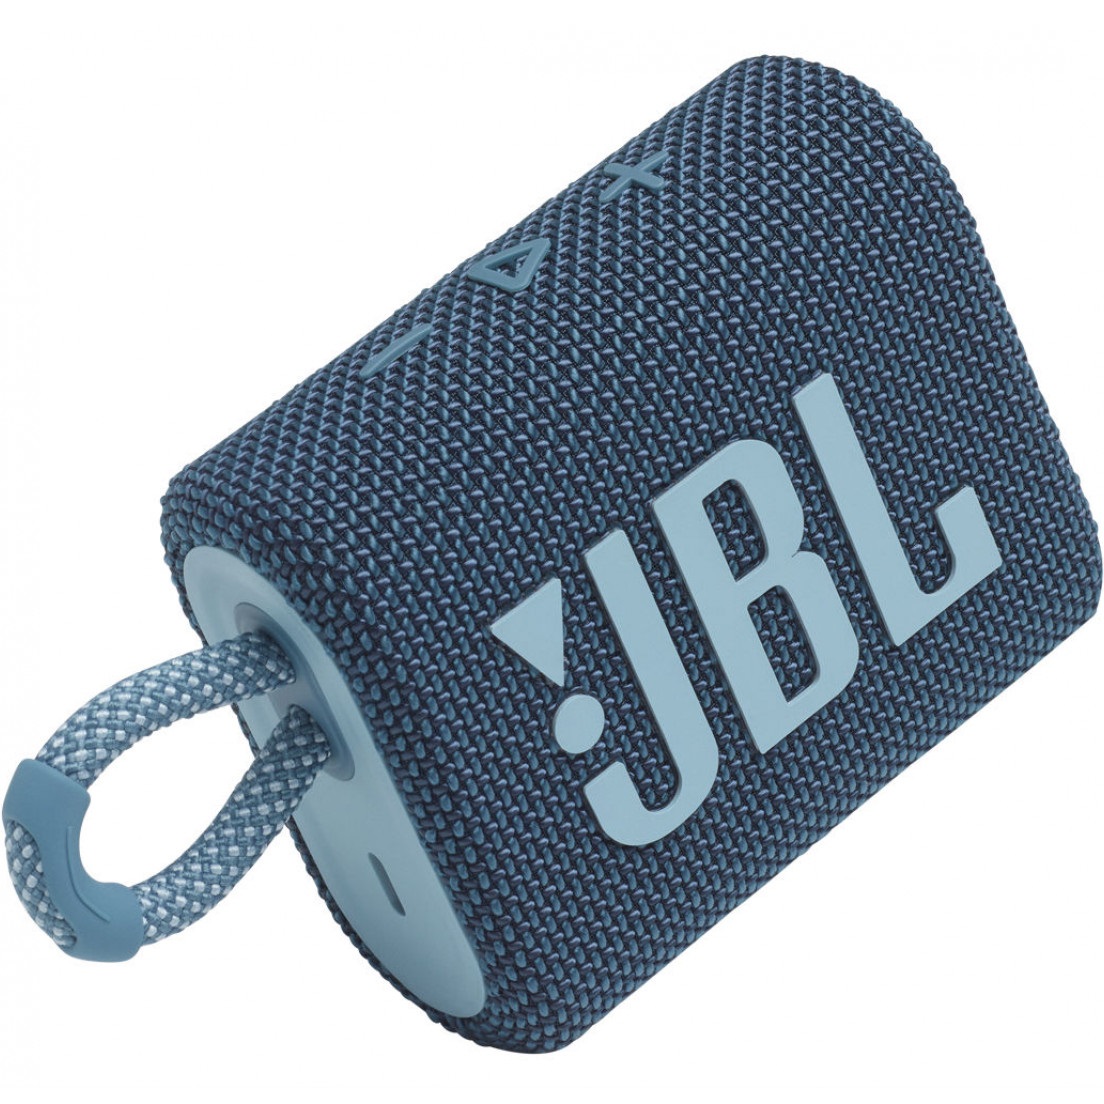 Портативная акустика JBL GO 3 Blue (JBLGO3BLU)